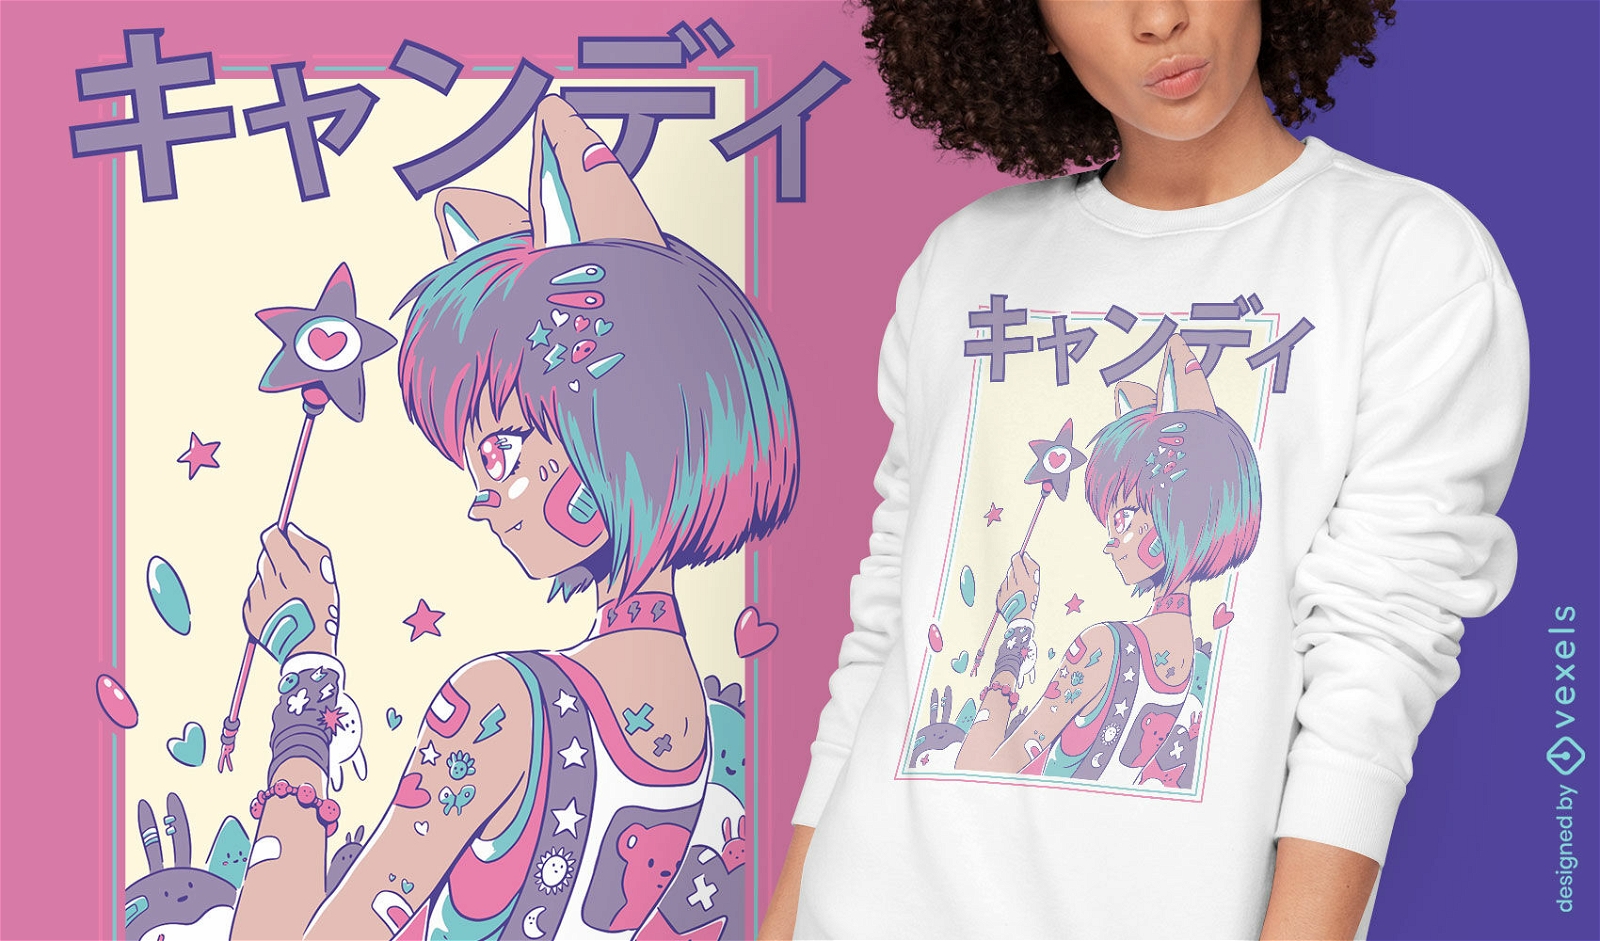 Nettes Anime-M?dchen mit Zauberstab-T-Shirt-Design